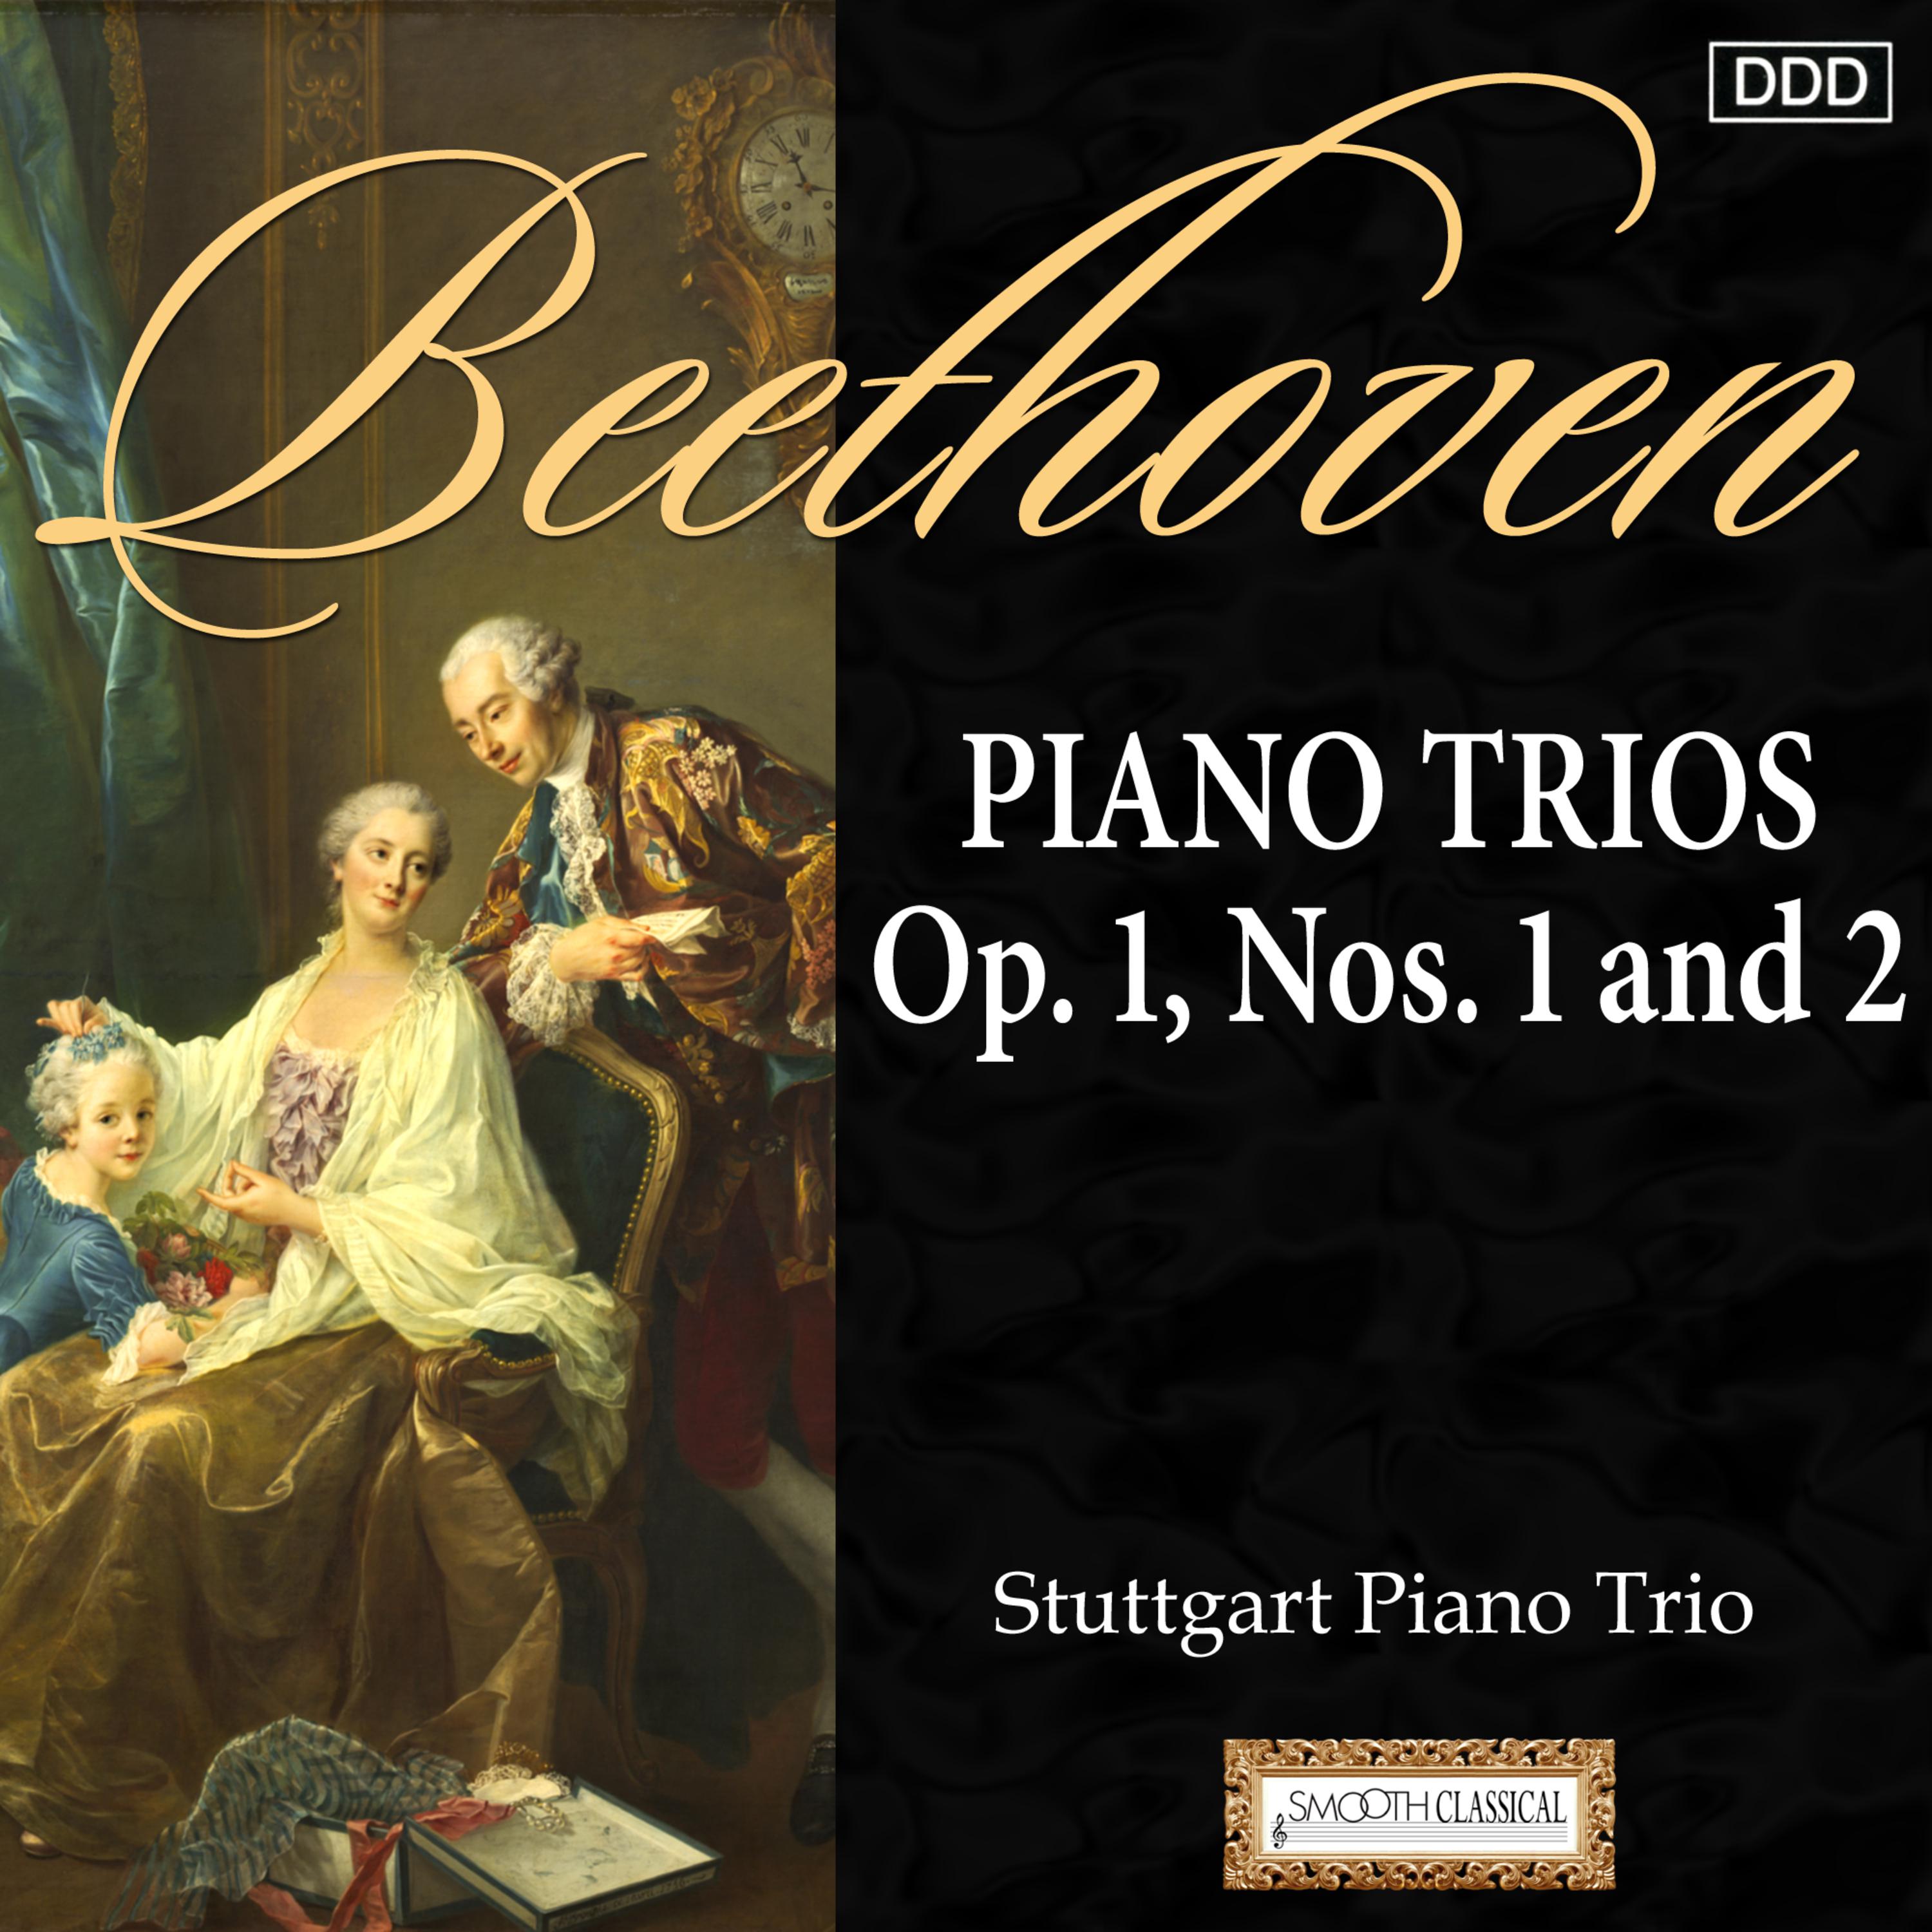 Piano Trio No. 2 in G Major, Op. 1 No. 2: I. Adagio - Allegro vivace